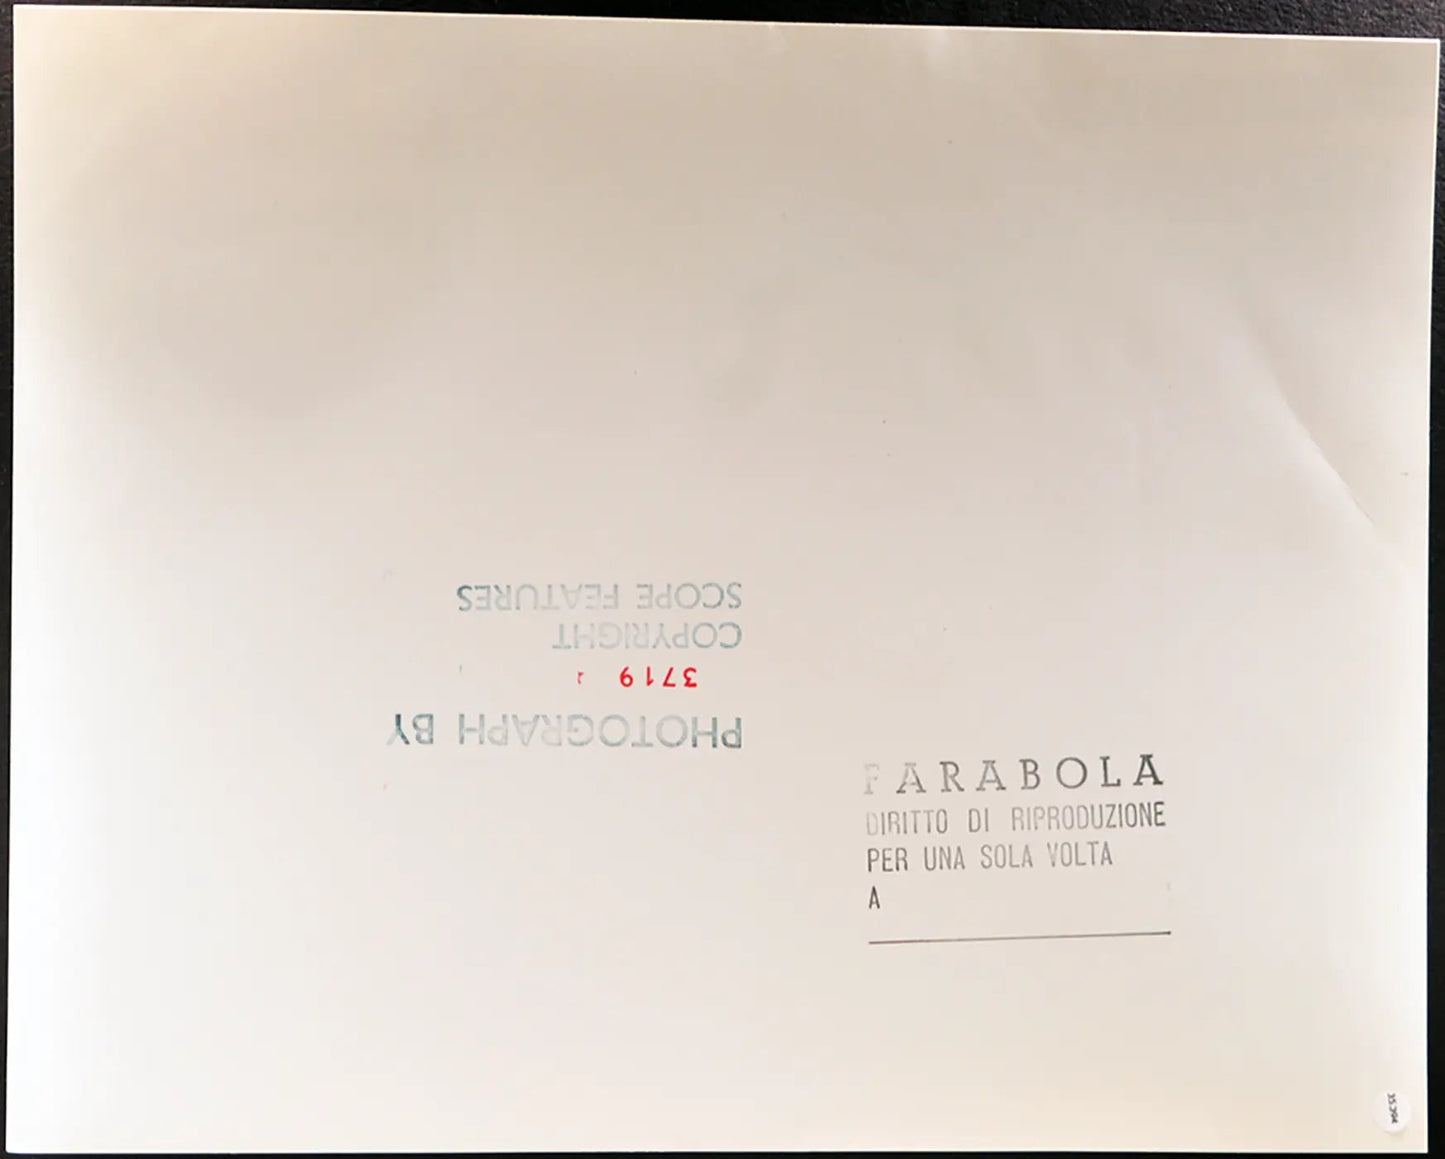 Beagle Università della California Ft 35394 - Stampa 30x40 cm - Farabola Stampa ai sali d'argento